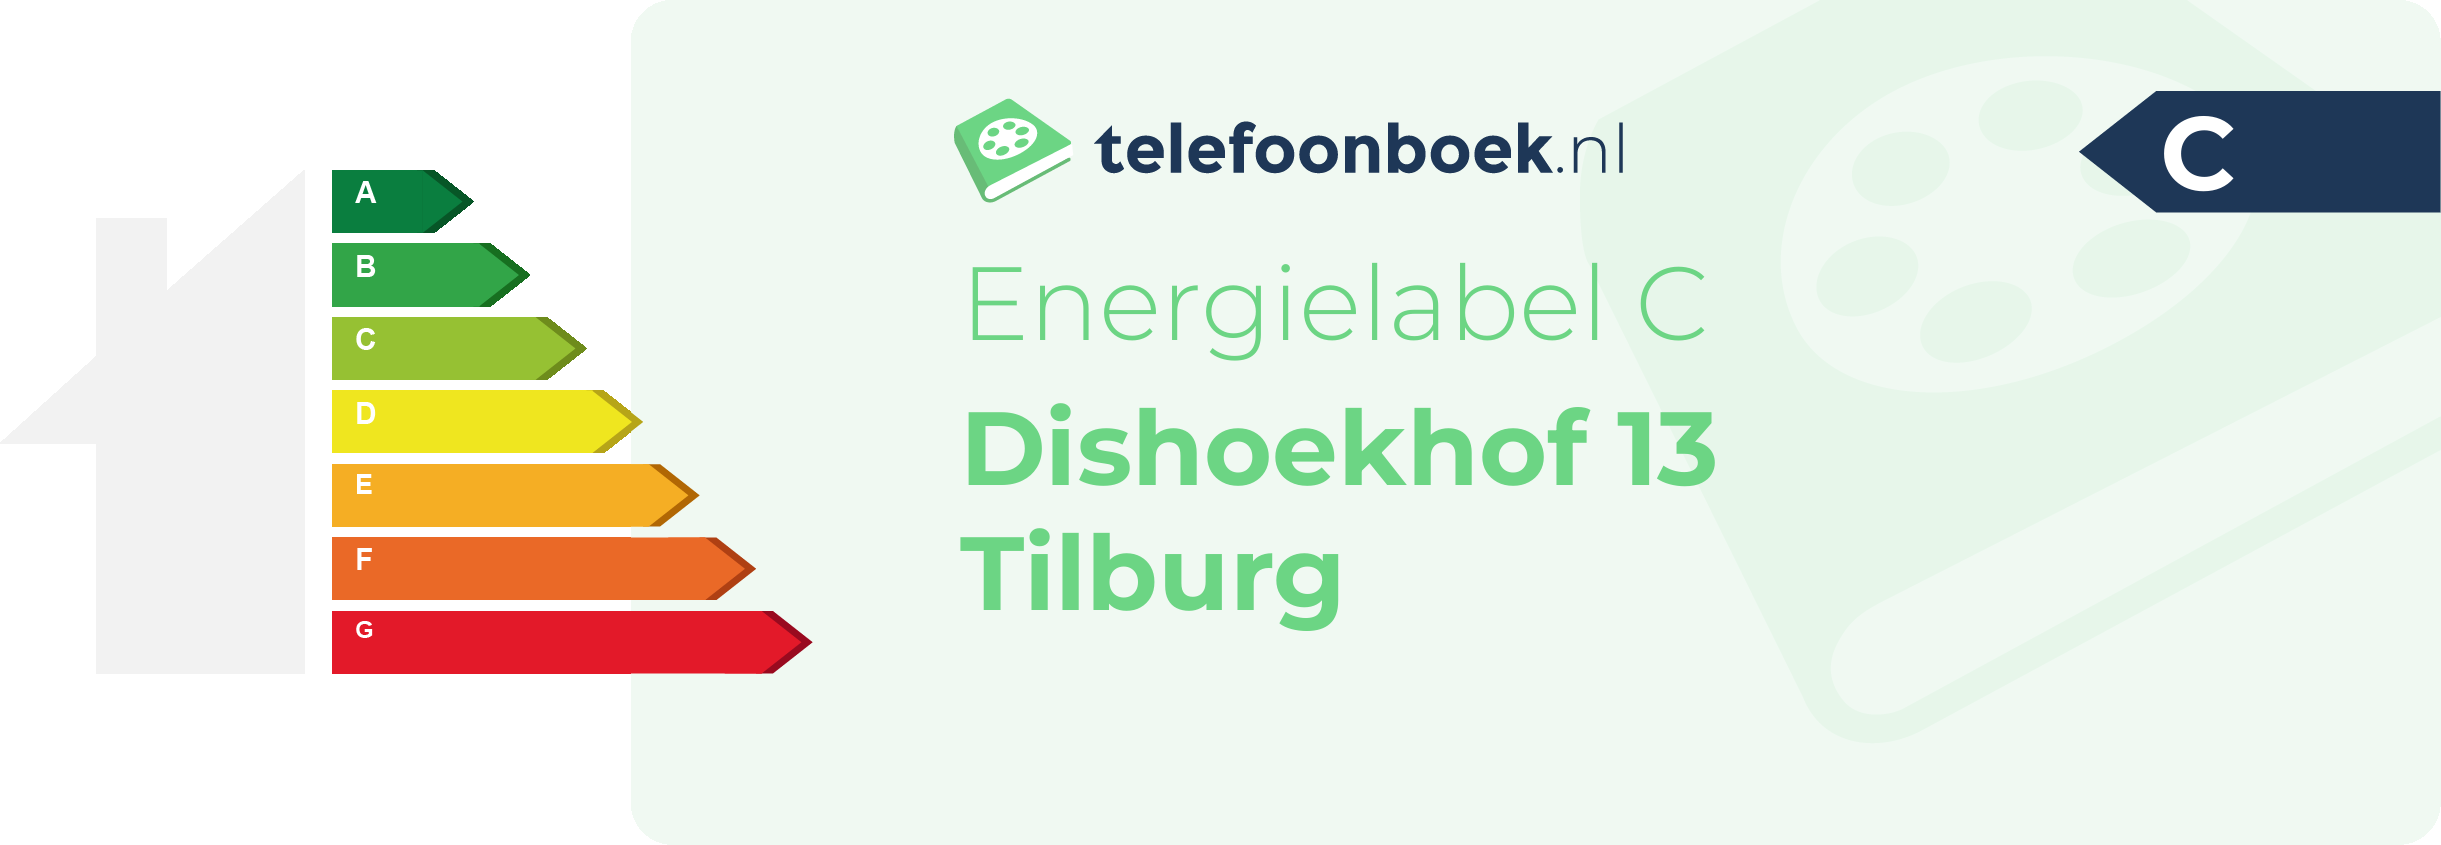 Energielabel Dishoekhof 13 Tilburg